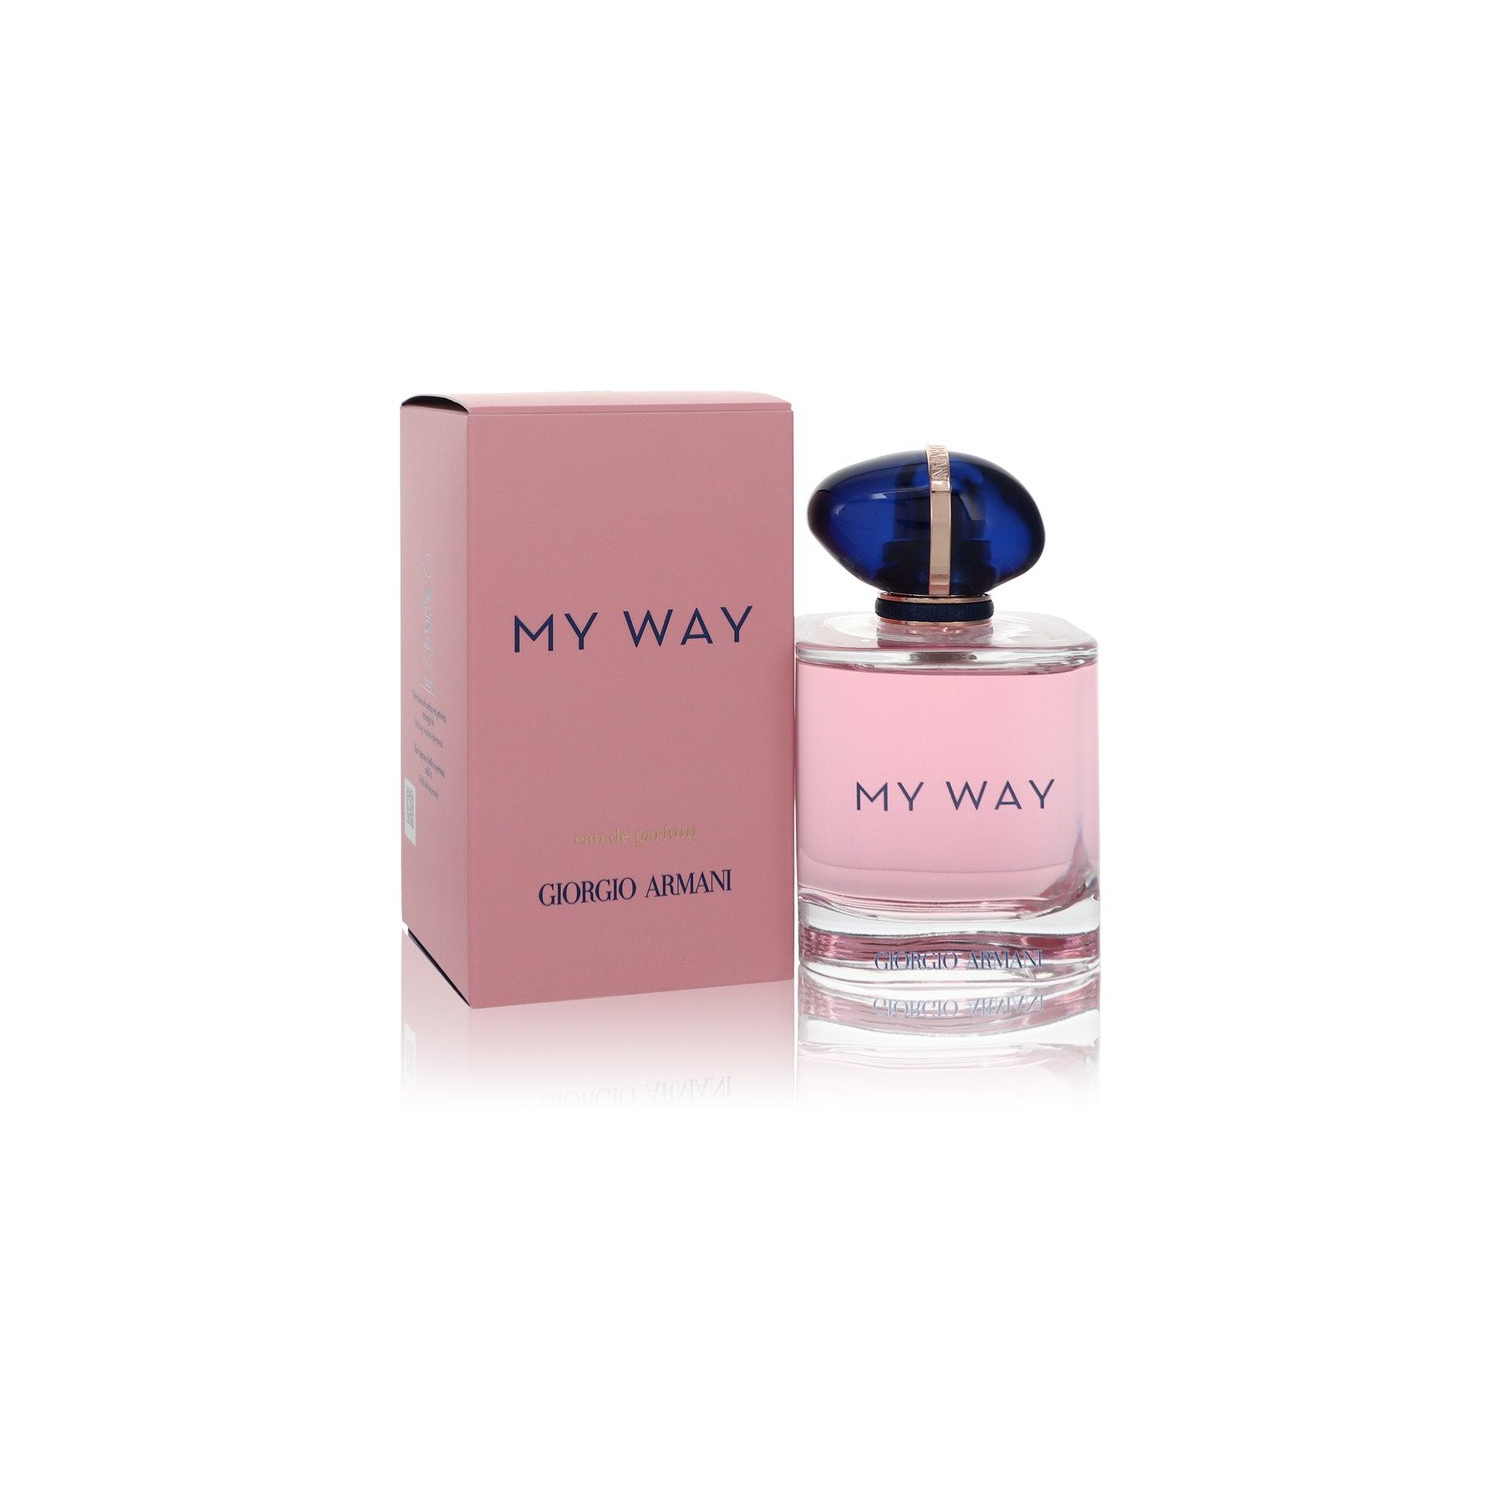 My Way by Giorgio Armani for Women - 3 oz EDP Spray